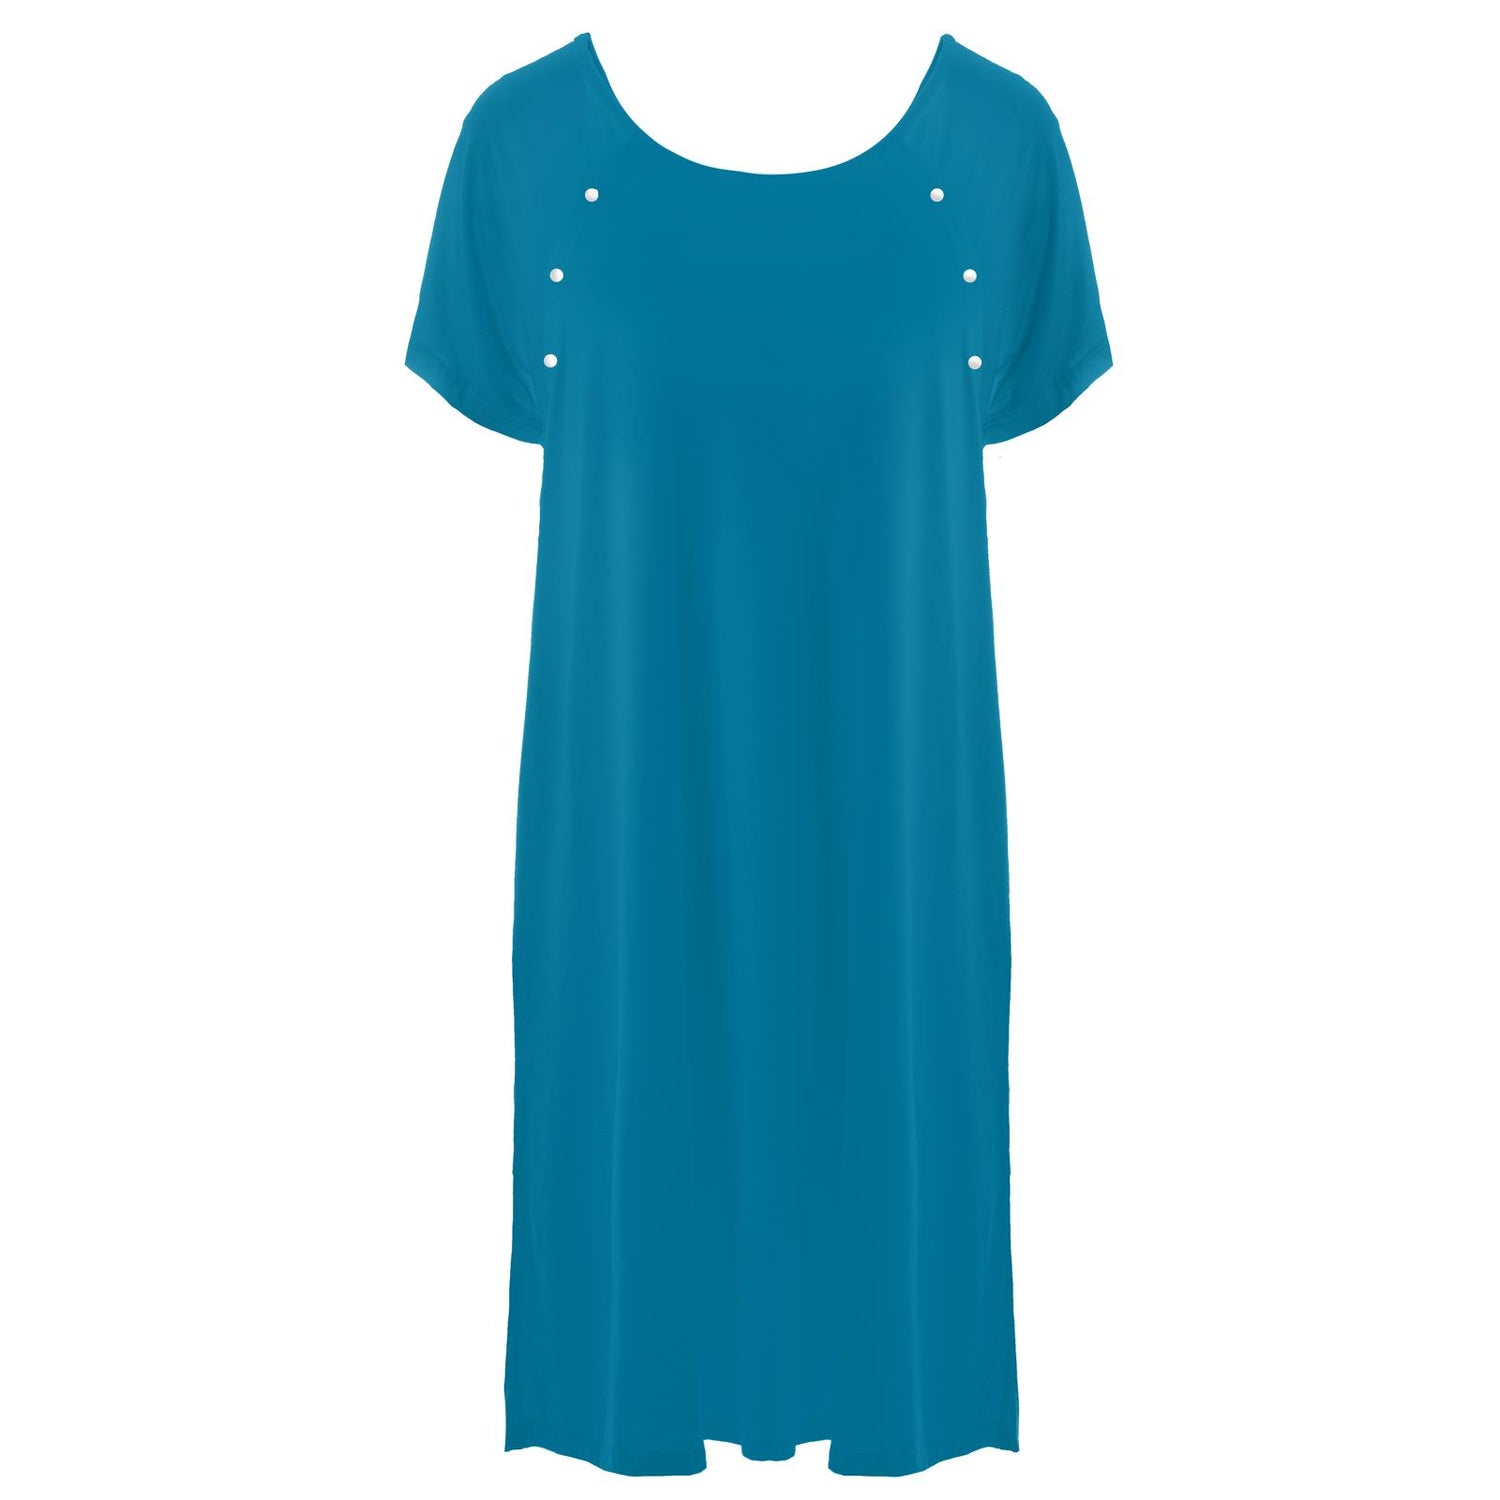 Women's Hospital Gown in Cerulean Blue